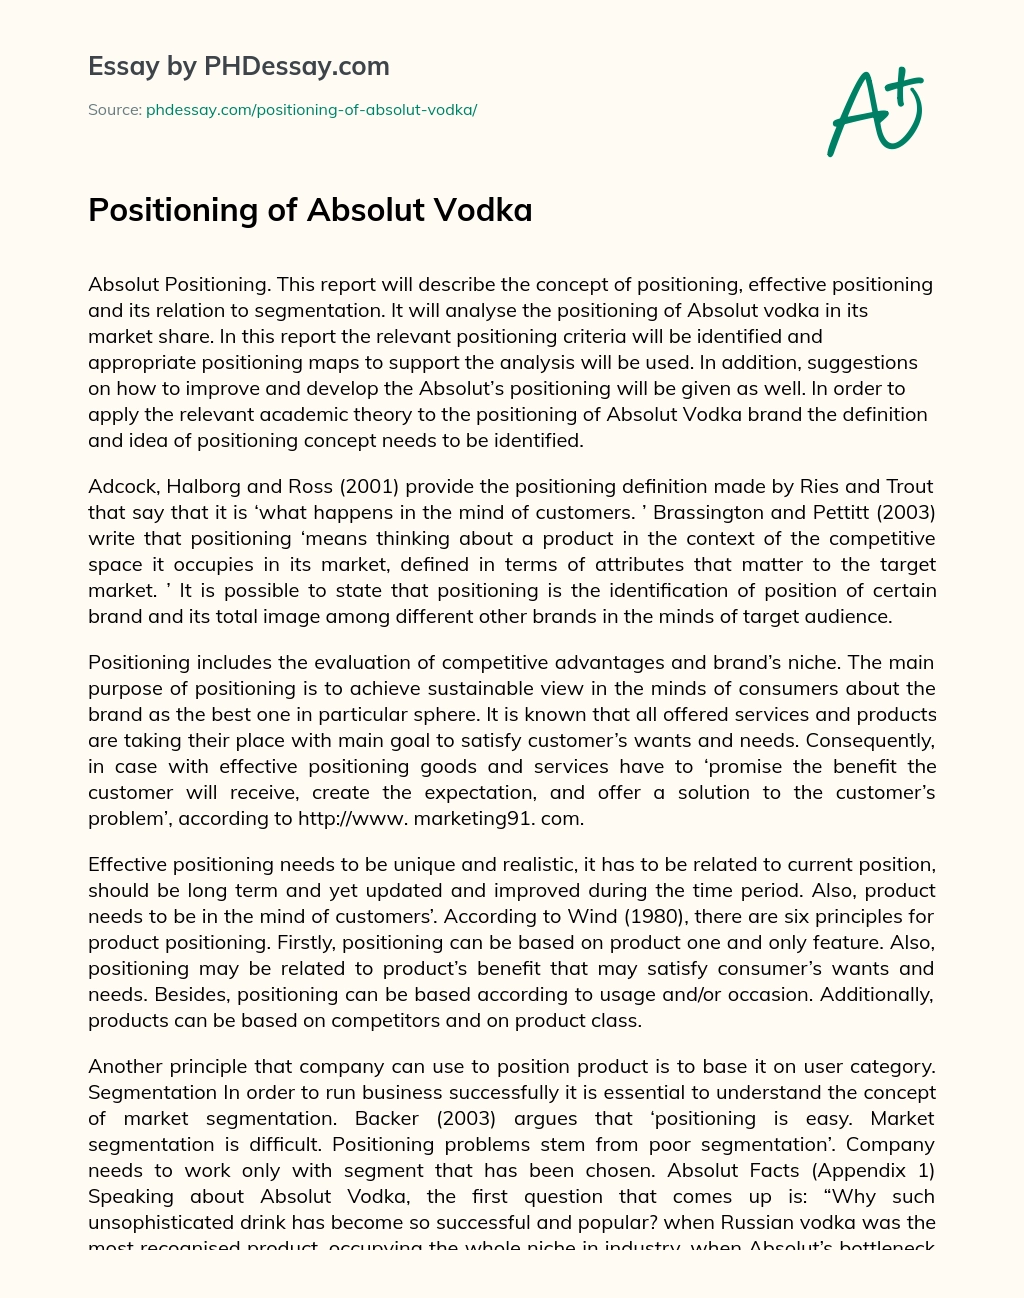 Positioning of Absolut Vodka essay